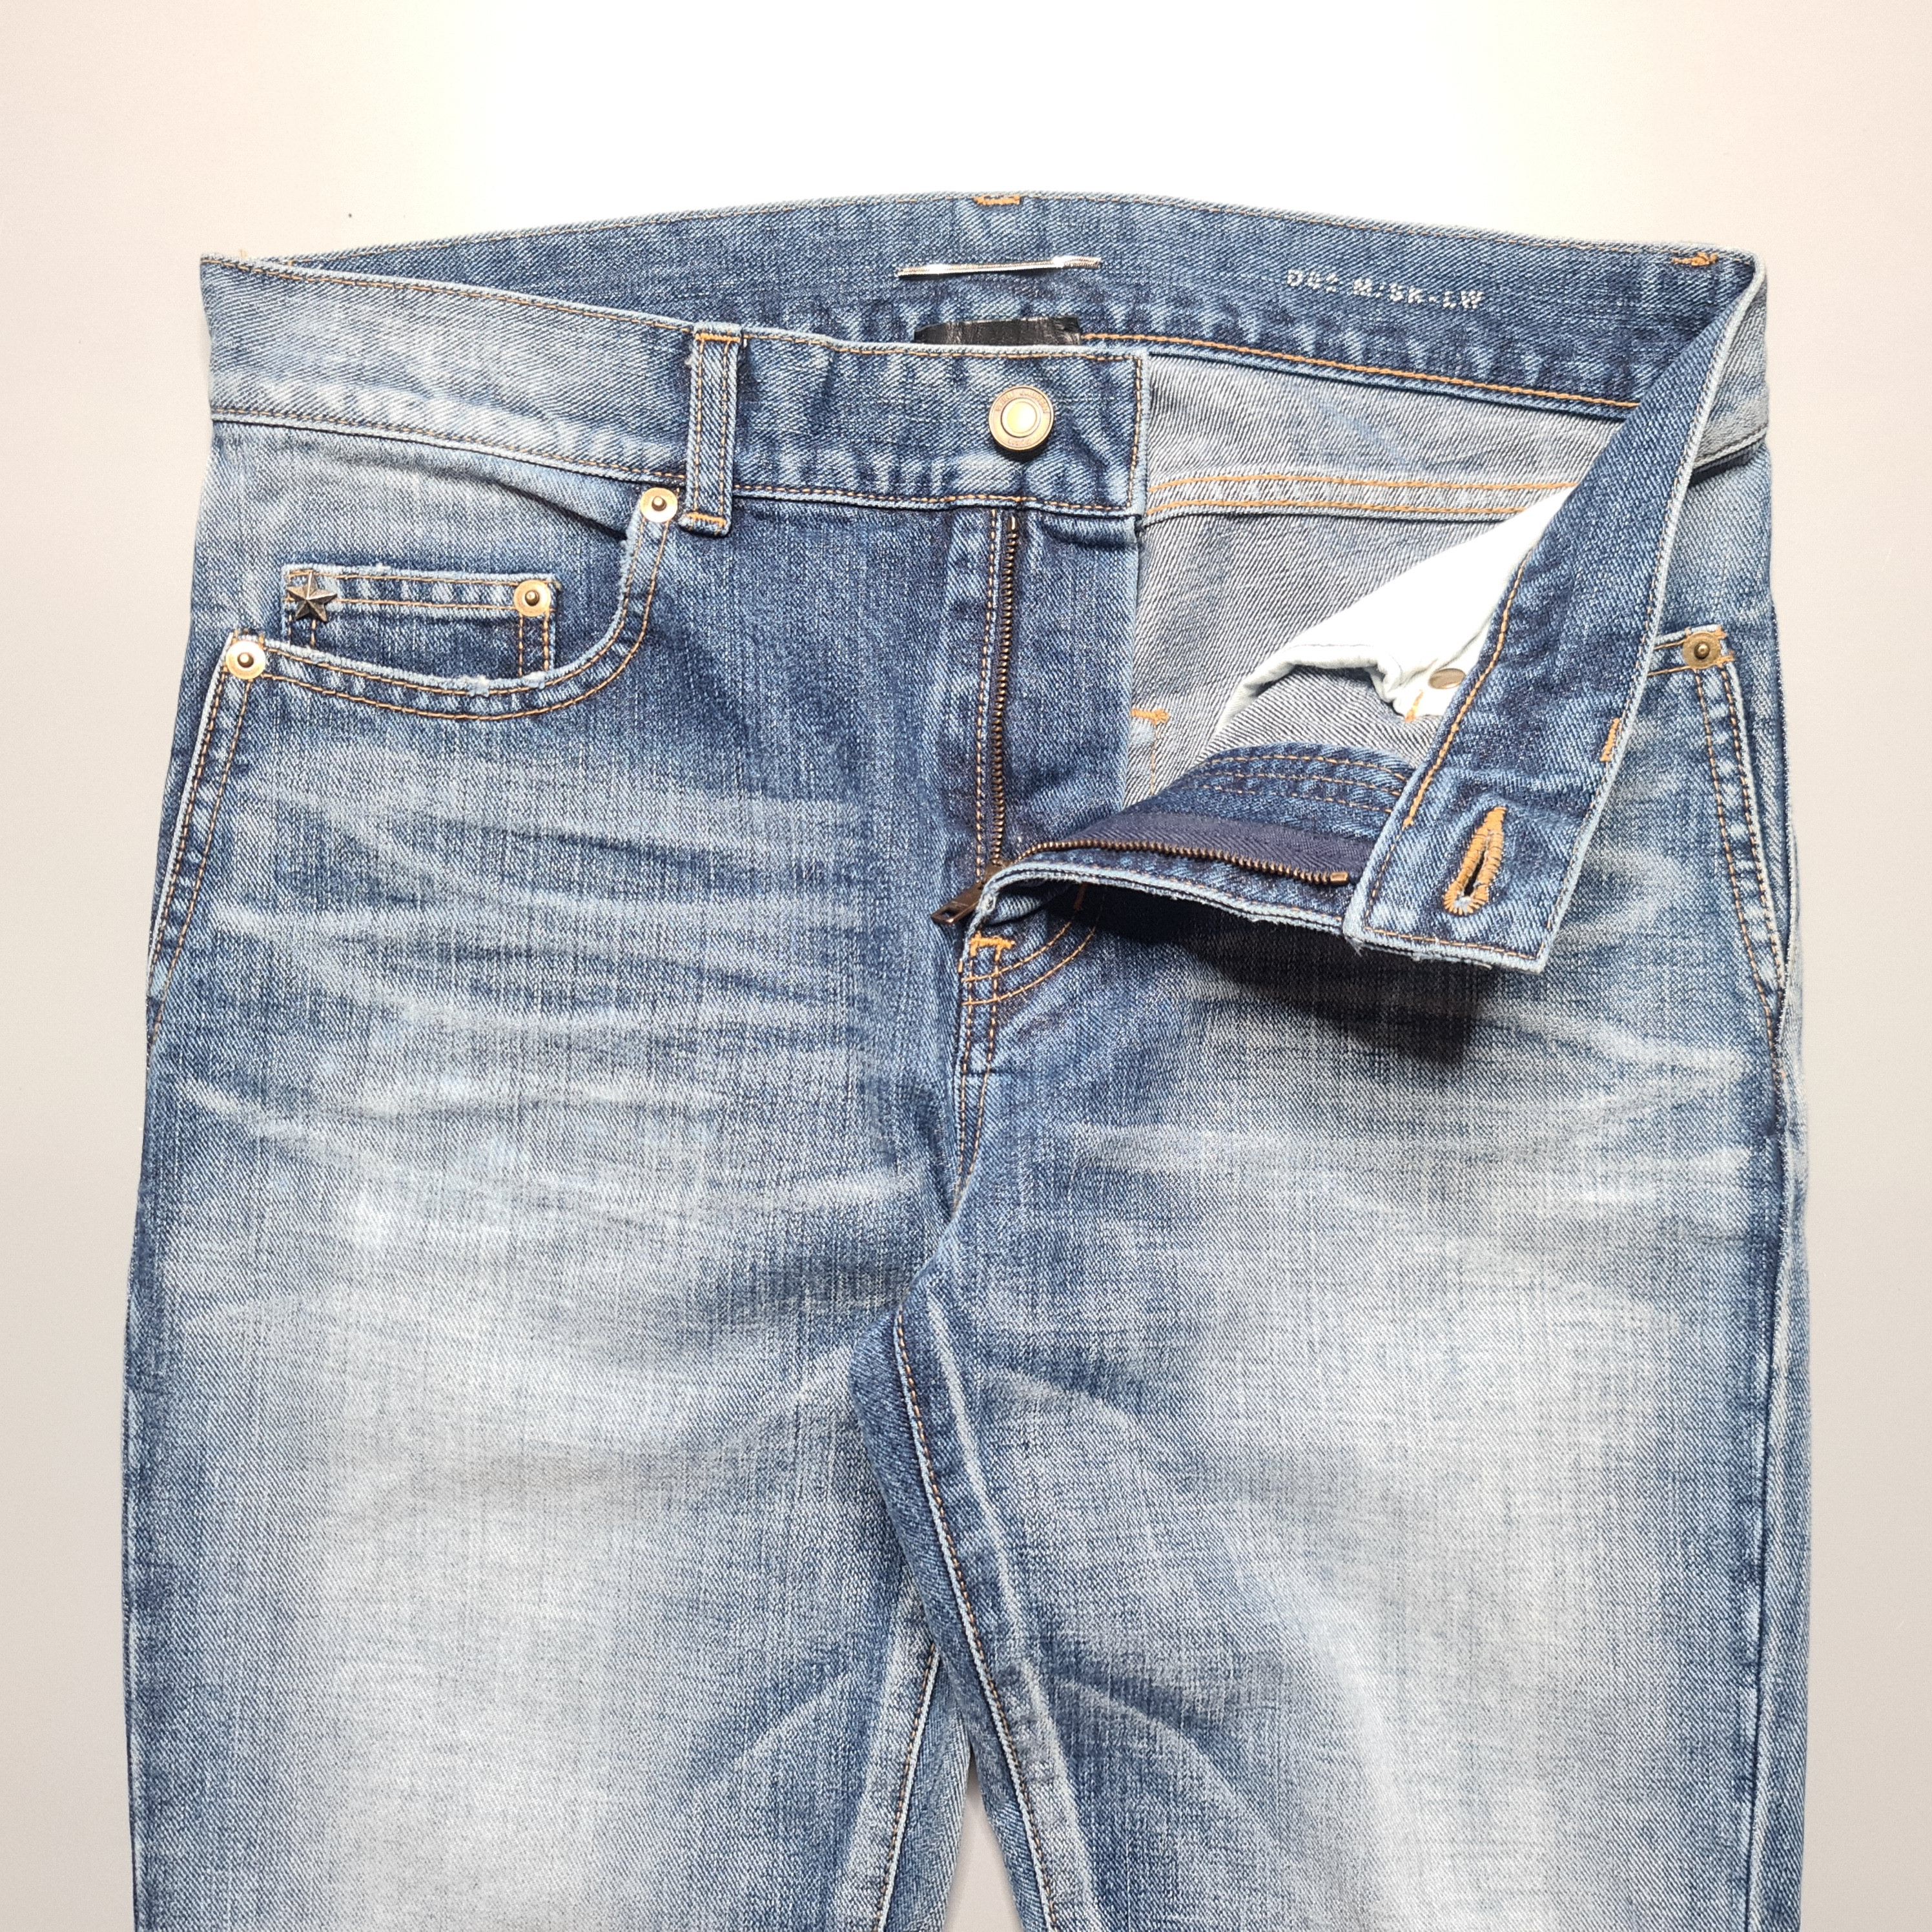 Saint Laurent Paris - AW17 D02 Blue Washed Skinny Jeans - 2